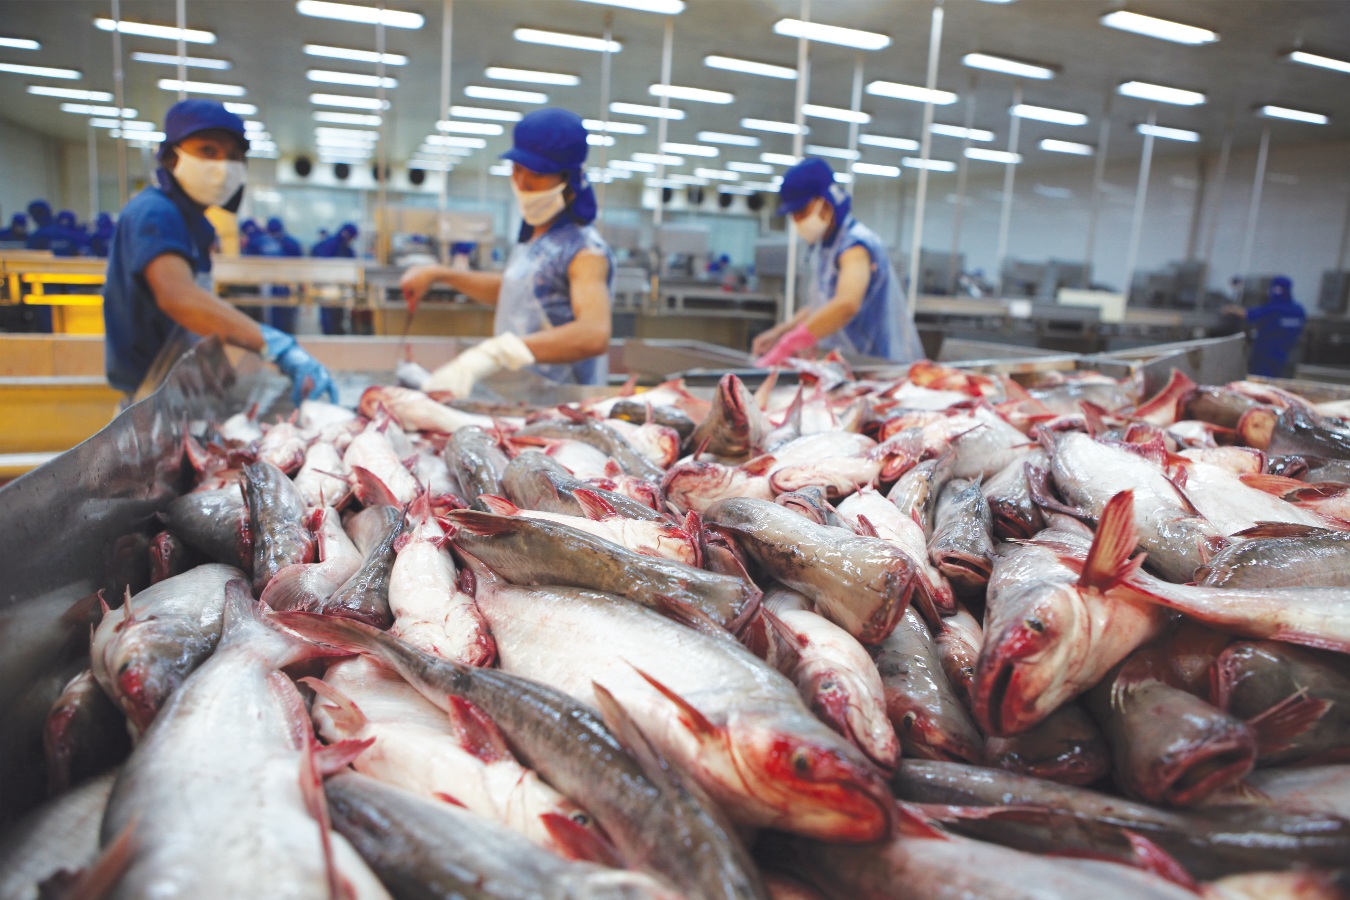 90% cá tra bán tại Mỹ nhập khẩu từ Việt Nam